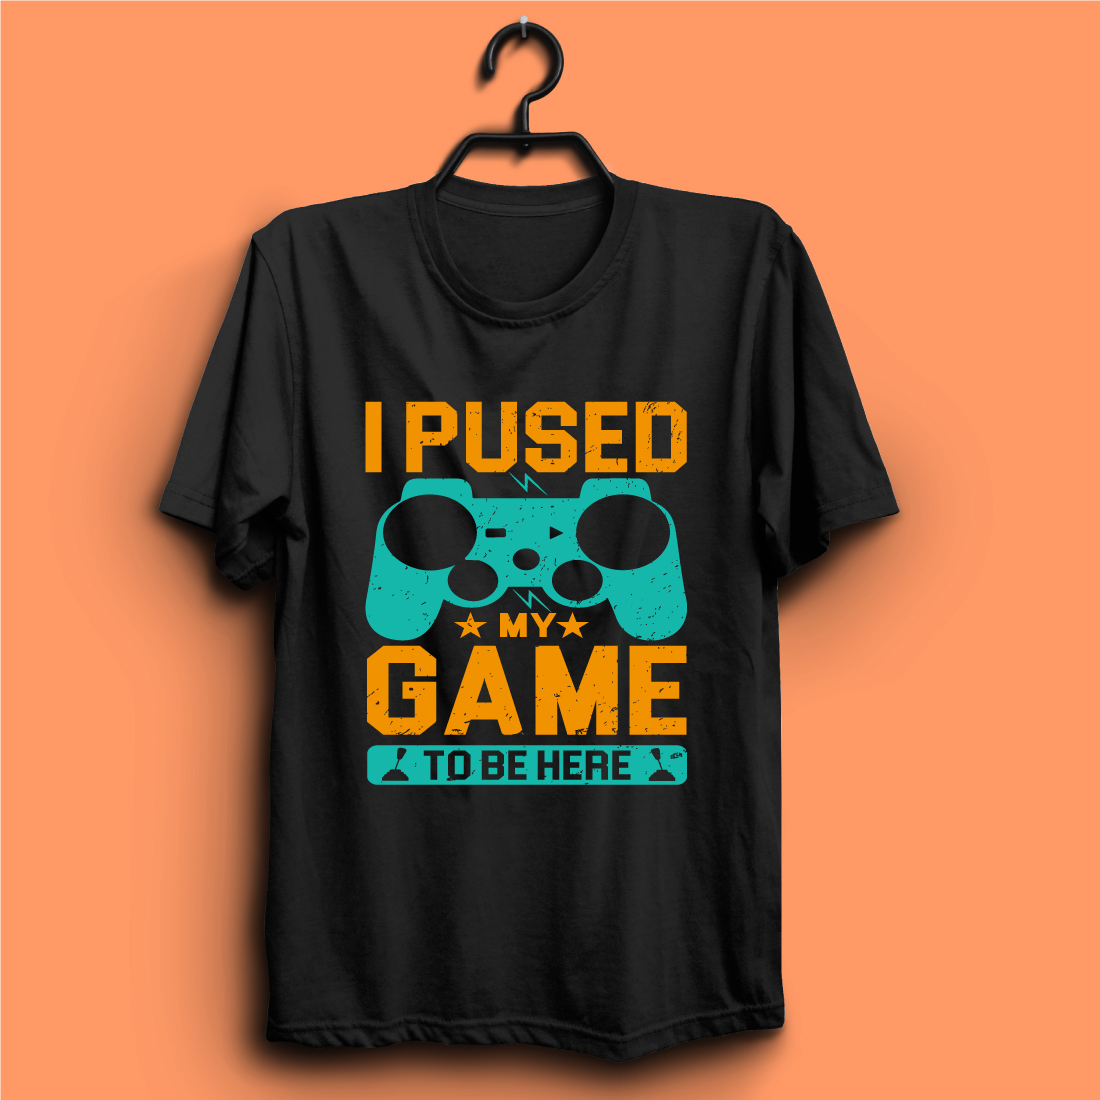 gaming t shirt design04 316